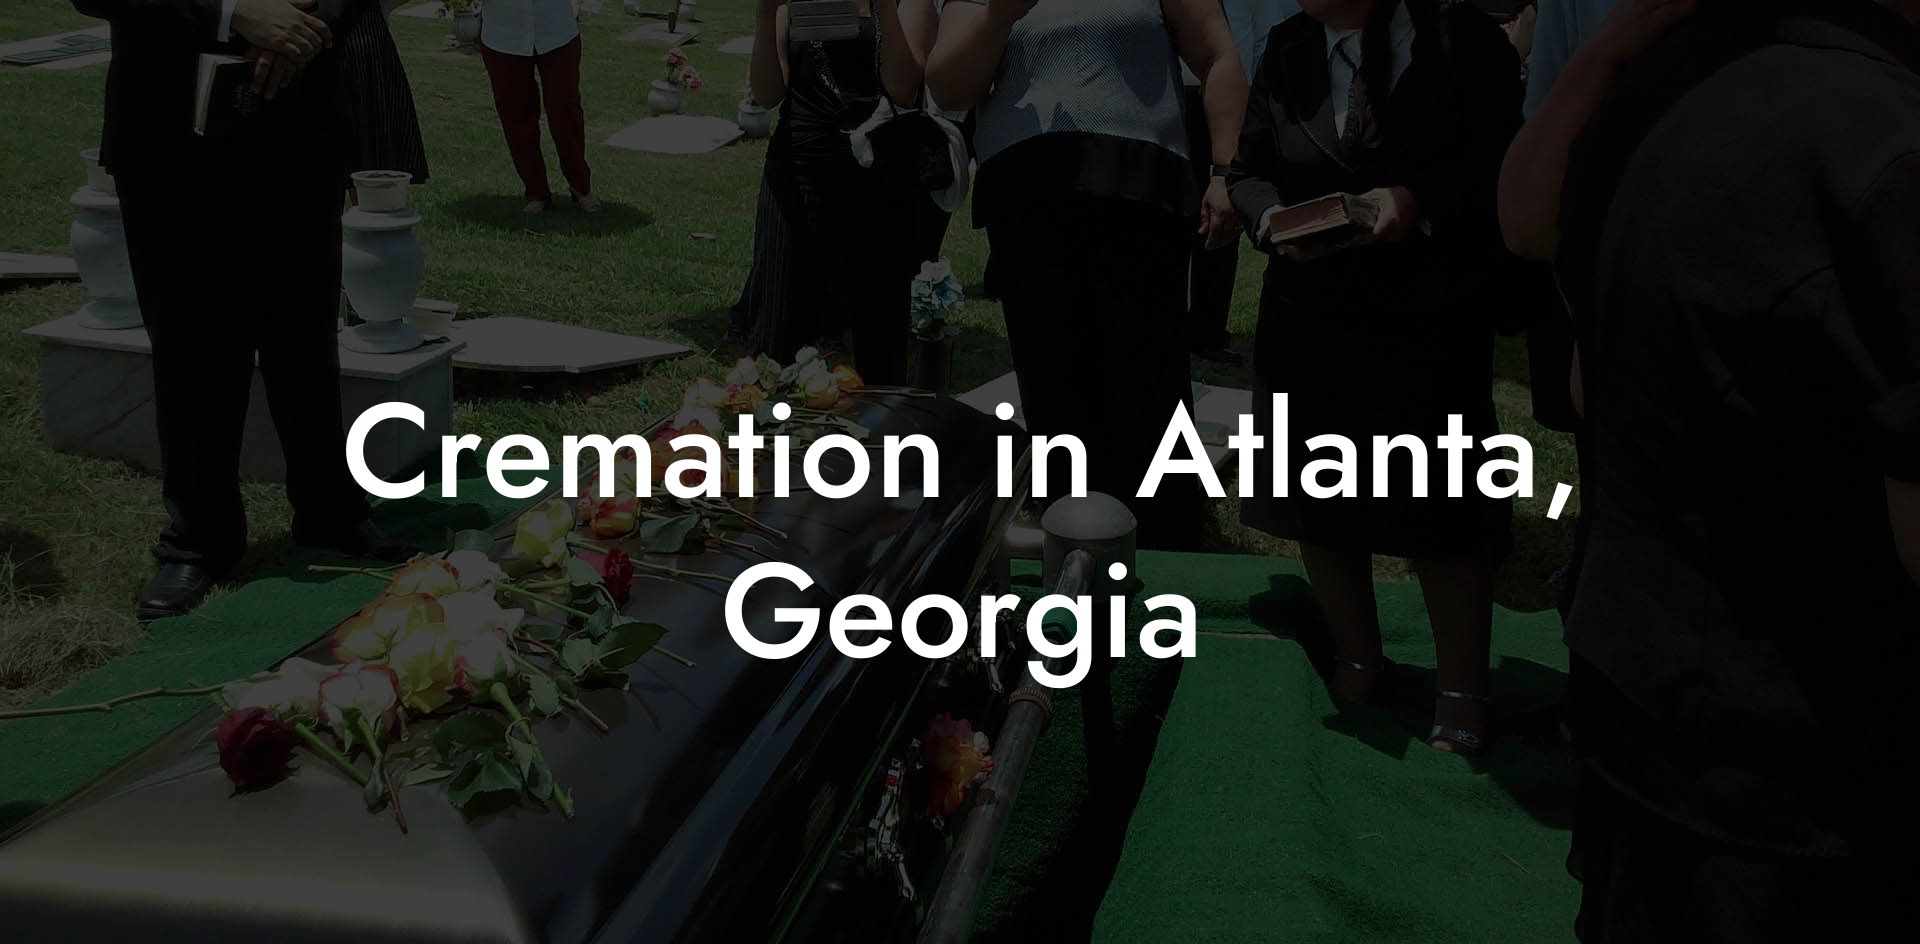 Cremation in Atlanta, Georgia